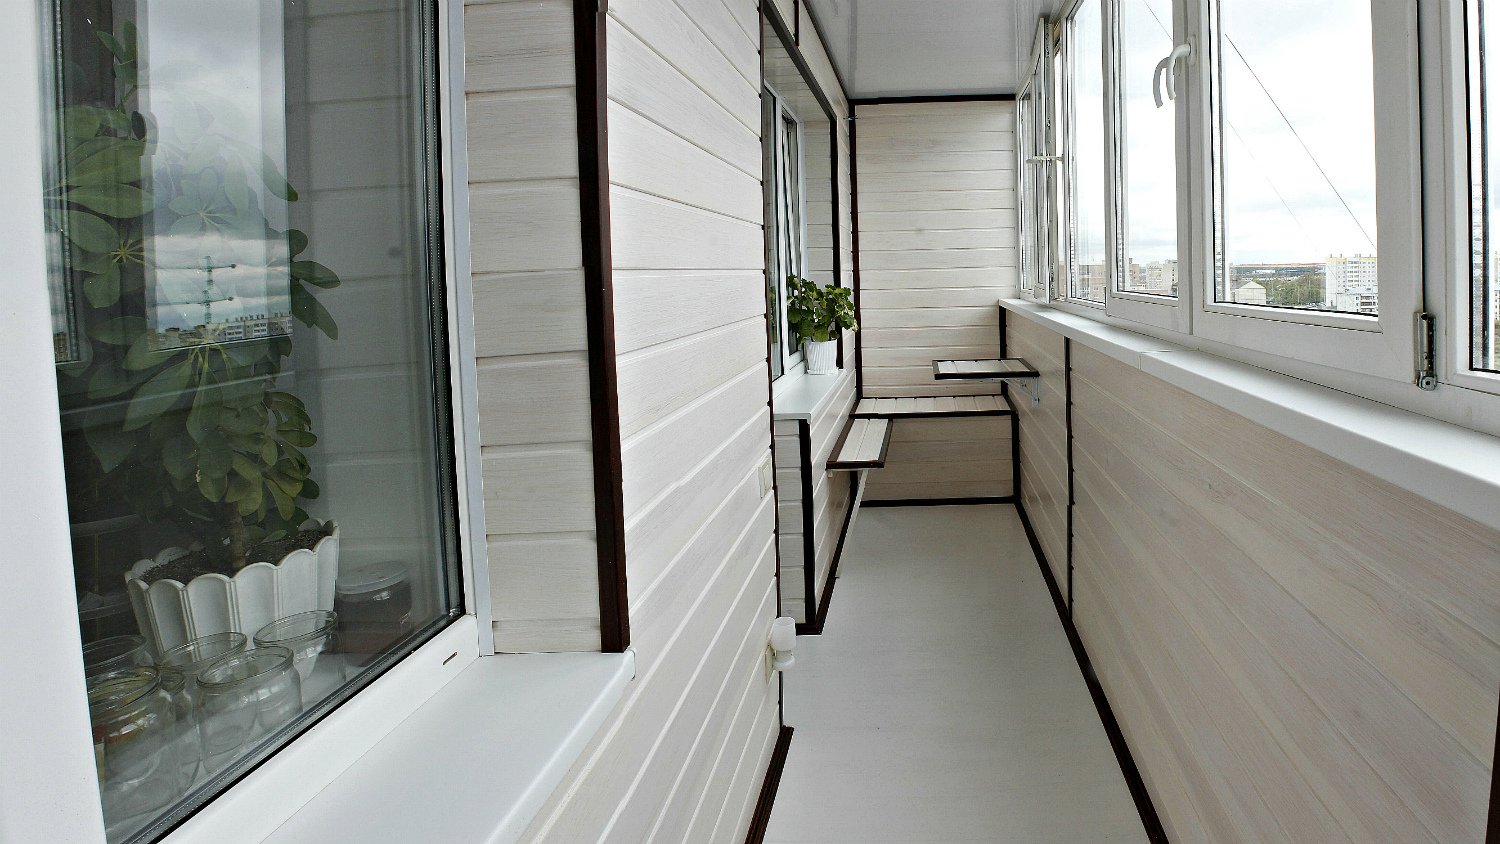 Варианты утепления балкона и лоджии